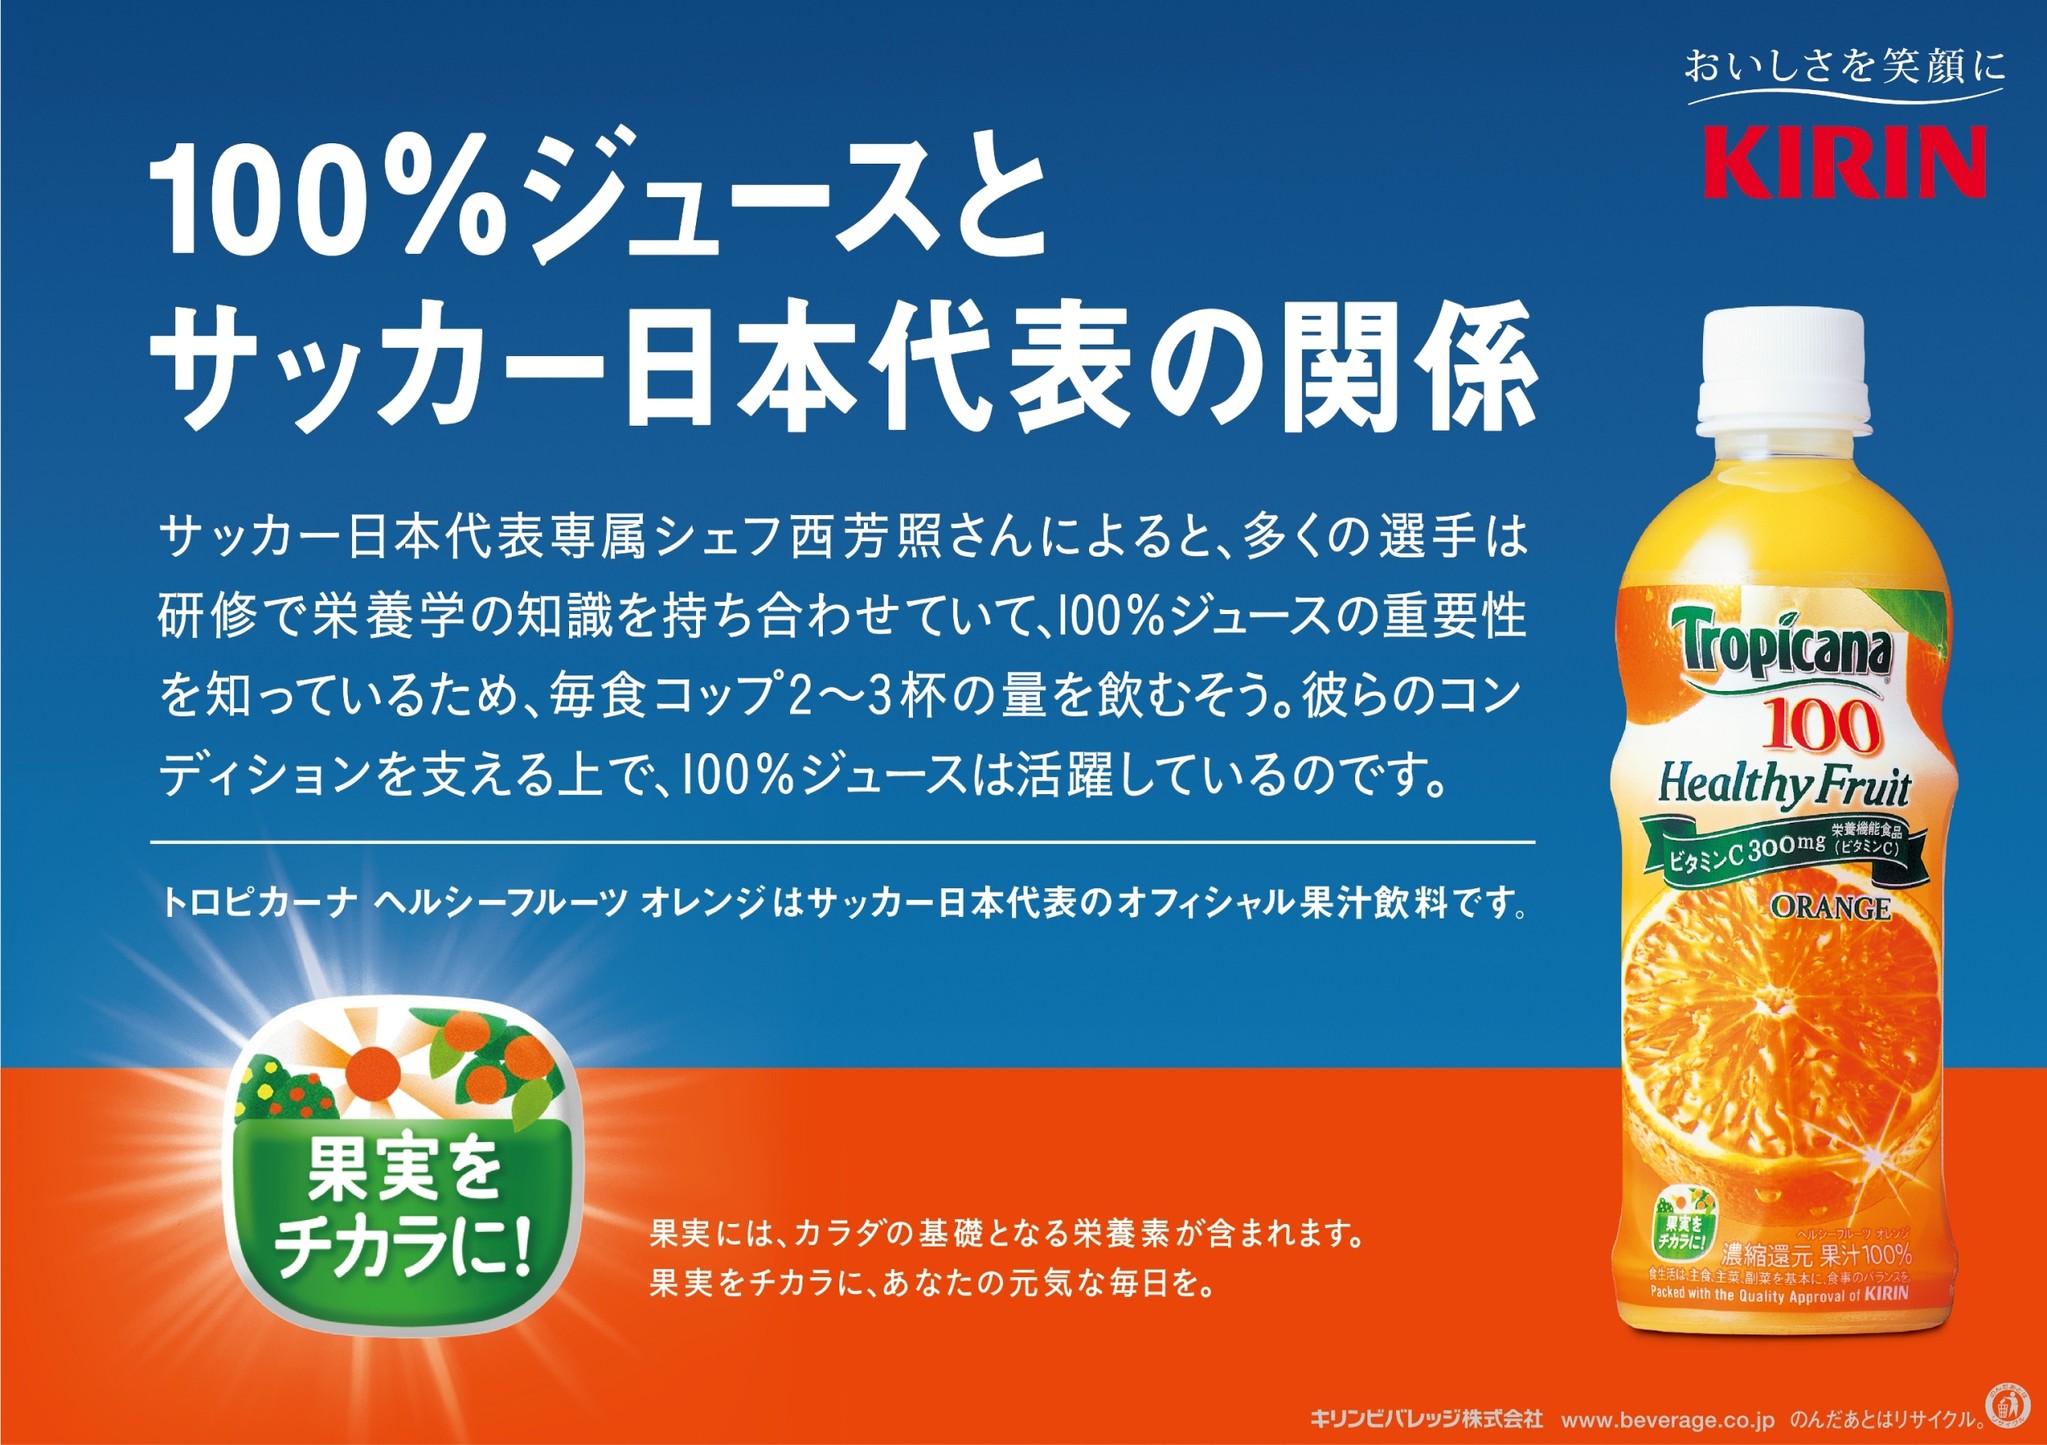 サッカー日本代表オフィシャル果汁飲料の トロピカーナ ヘルシーフルーツ オレンジ が期間限定パッケージで登場 キリンビバレッジ株式会社のプレスリリース